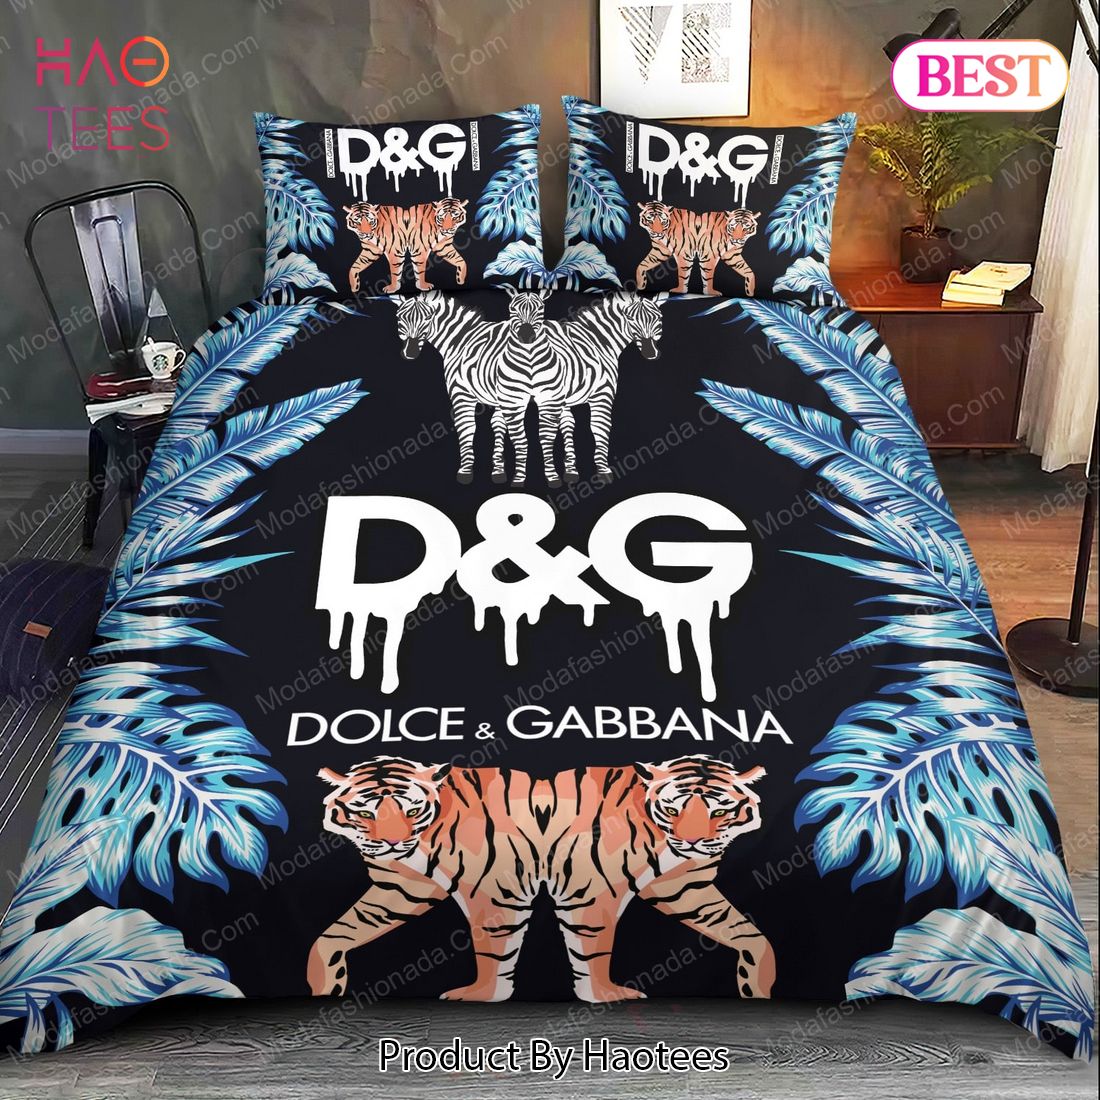 Buy Tiger Dolce & Gabbana Bedding Sets Bed Sets, Bedroom Sets, Comforter  Sets, Duvet Cover, Bedspread